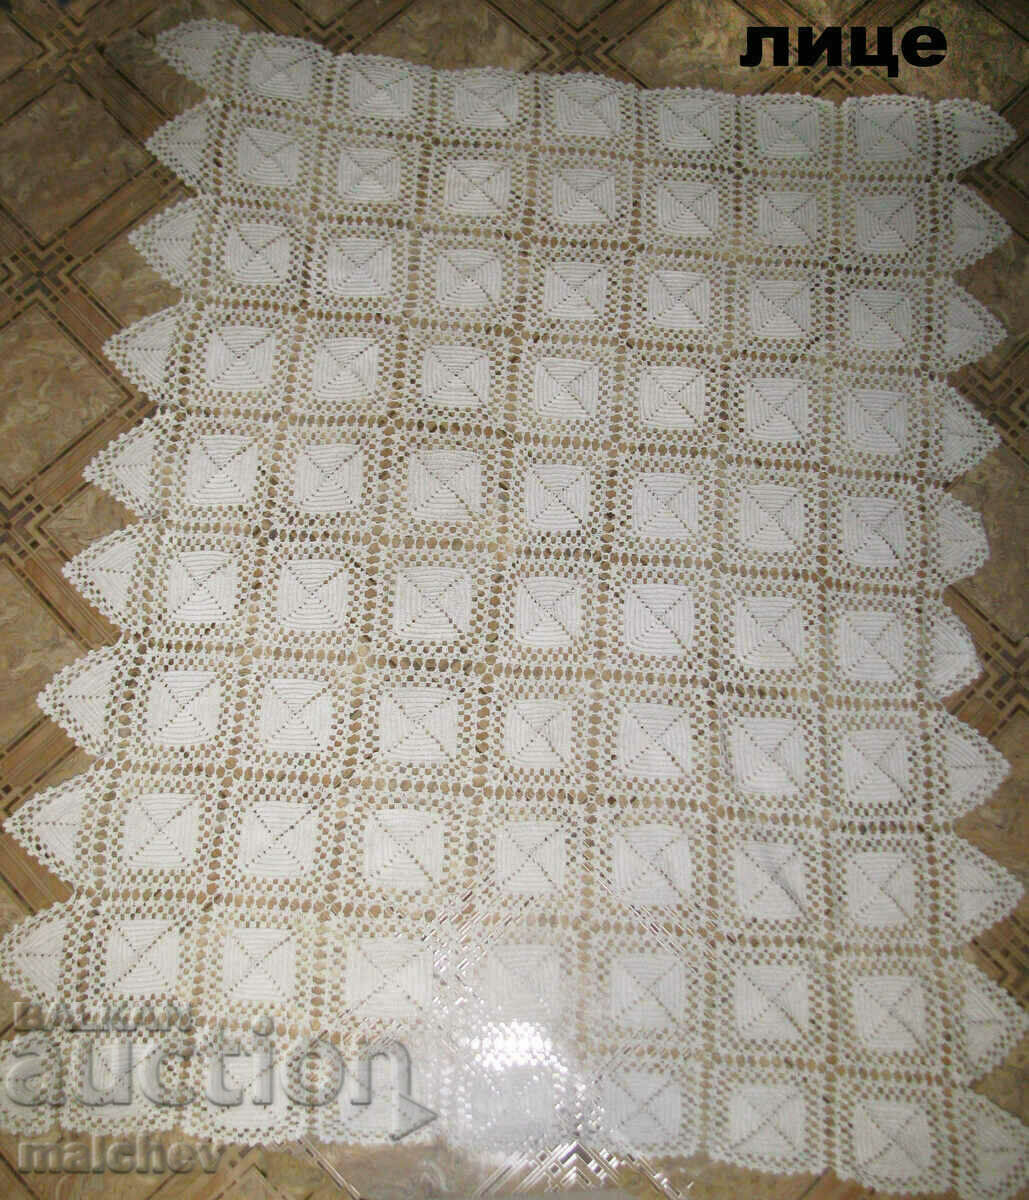 Cuvertură veche tricotată groasă 175/210 cm pentru pat de o persoană